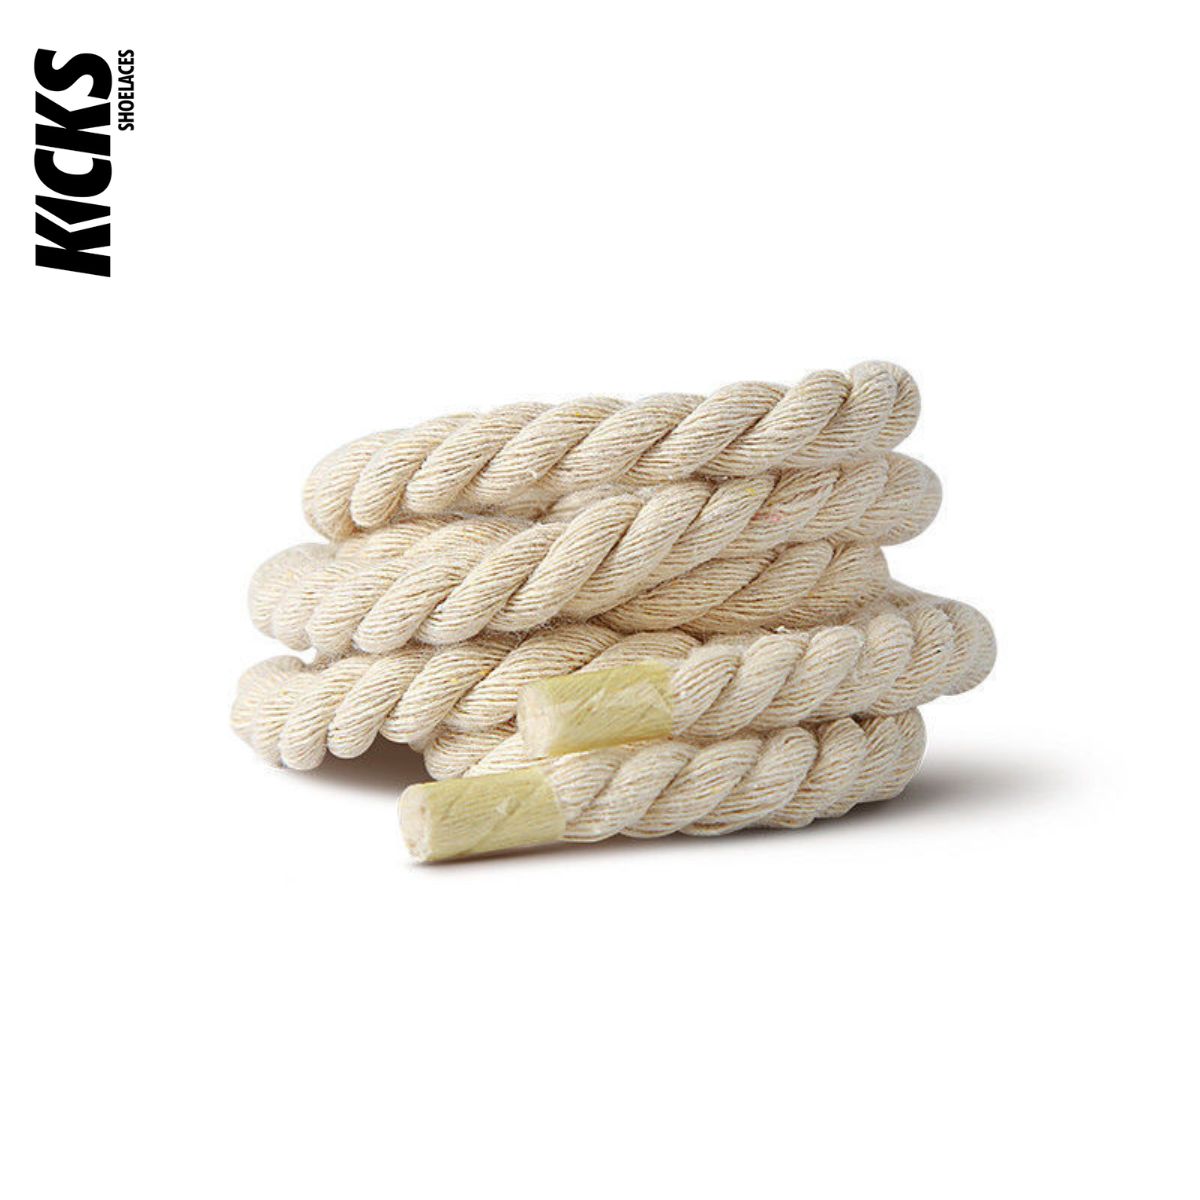 Round Fat laces - Kicks Shoelaces